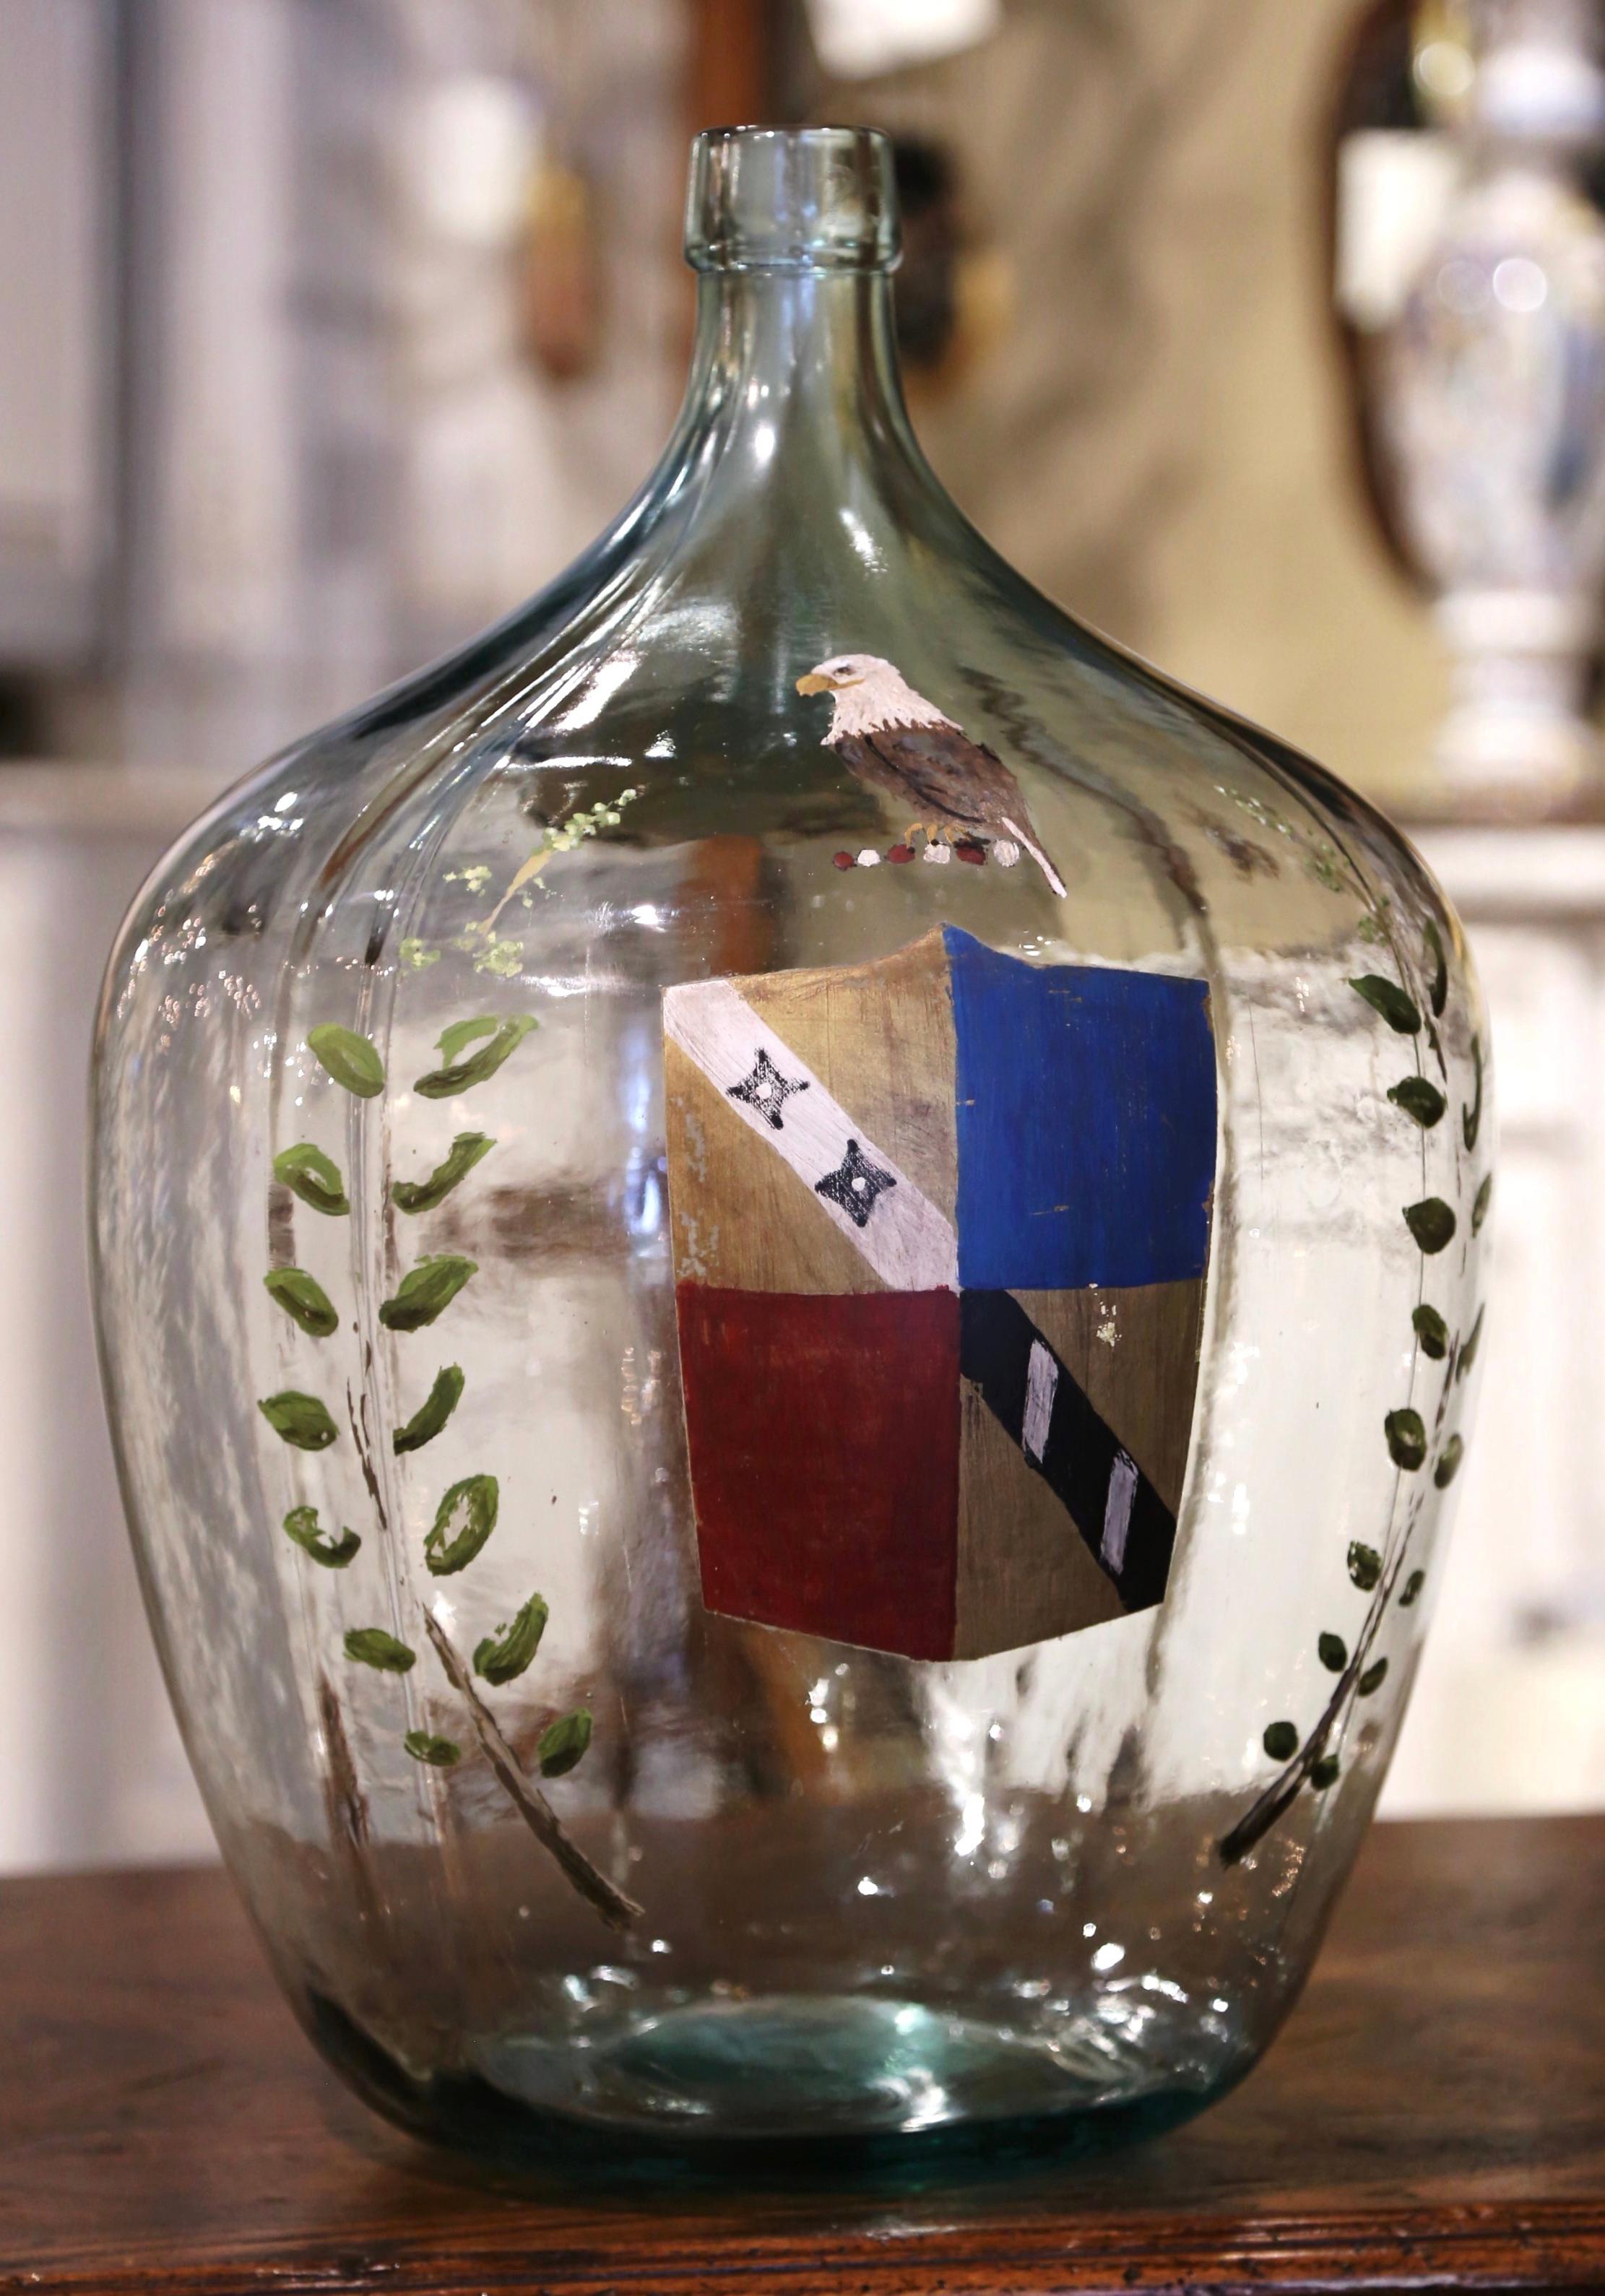 Bewahren Sie Ihre Weinkorken in dieser klassischen französischen Weinflasche auf! Diese hohe Glasflasche, die in Frankreich mundgeblasen wurde, zeigt ein mundgeblasenes Familienwappen mit einer Vogelfigur, das auf beiden Seiten mit Zweigen verziert